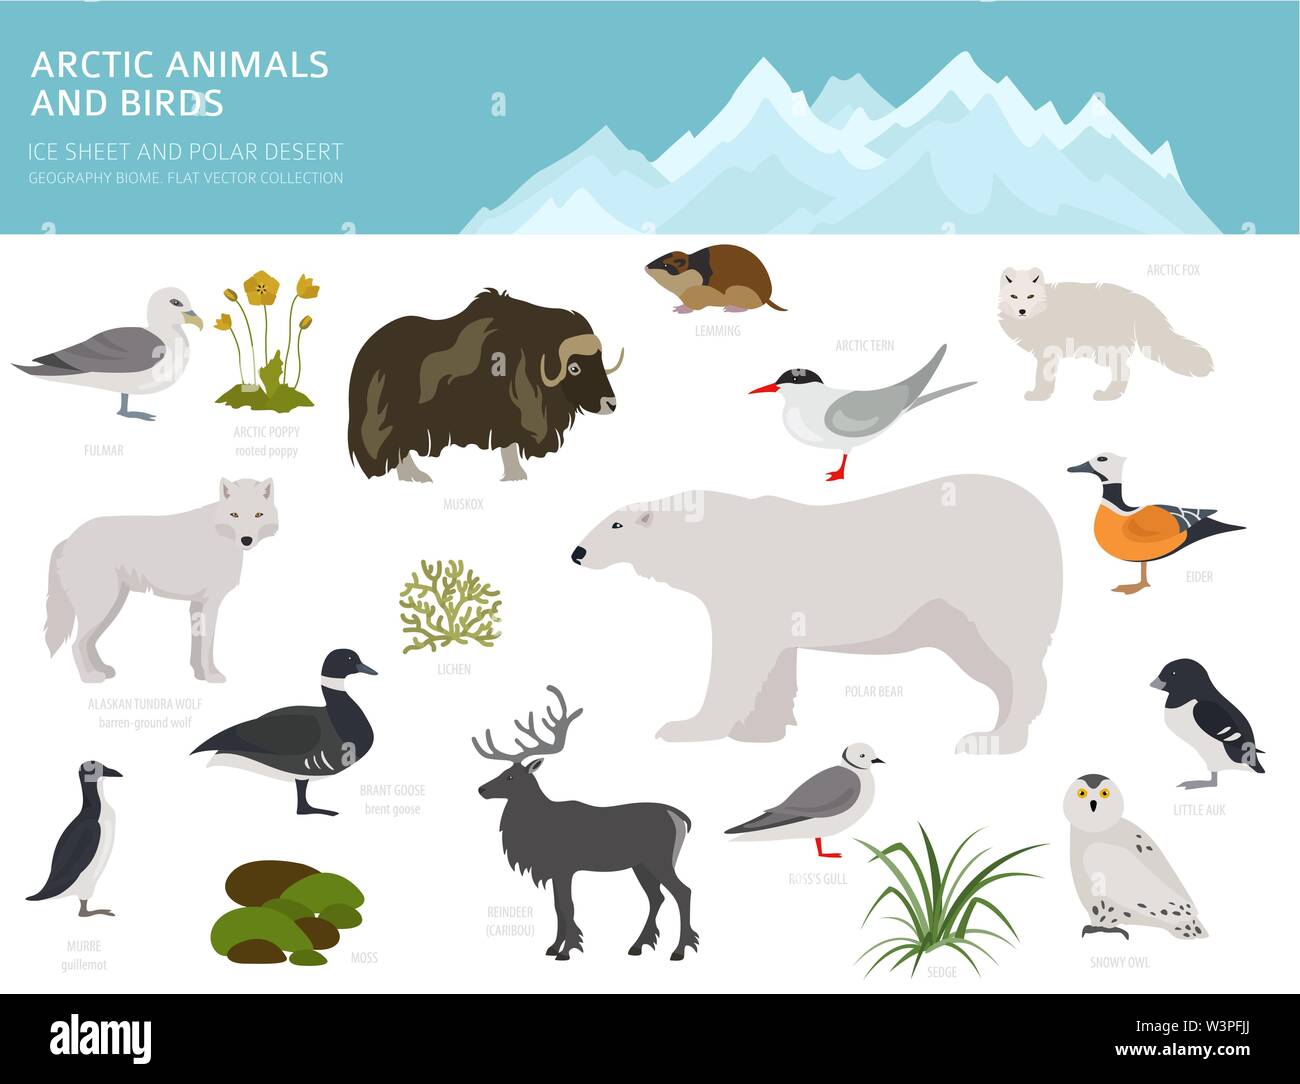 Lastra di ghiaccio polare e desert biome. Ecosistema terrestre mappa del mondo. Arctic animali, uccelli, pesci e piante ed infografico design. Illustrazione Vettoriale Illustrazione Vettoriale